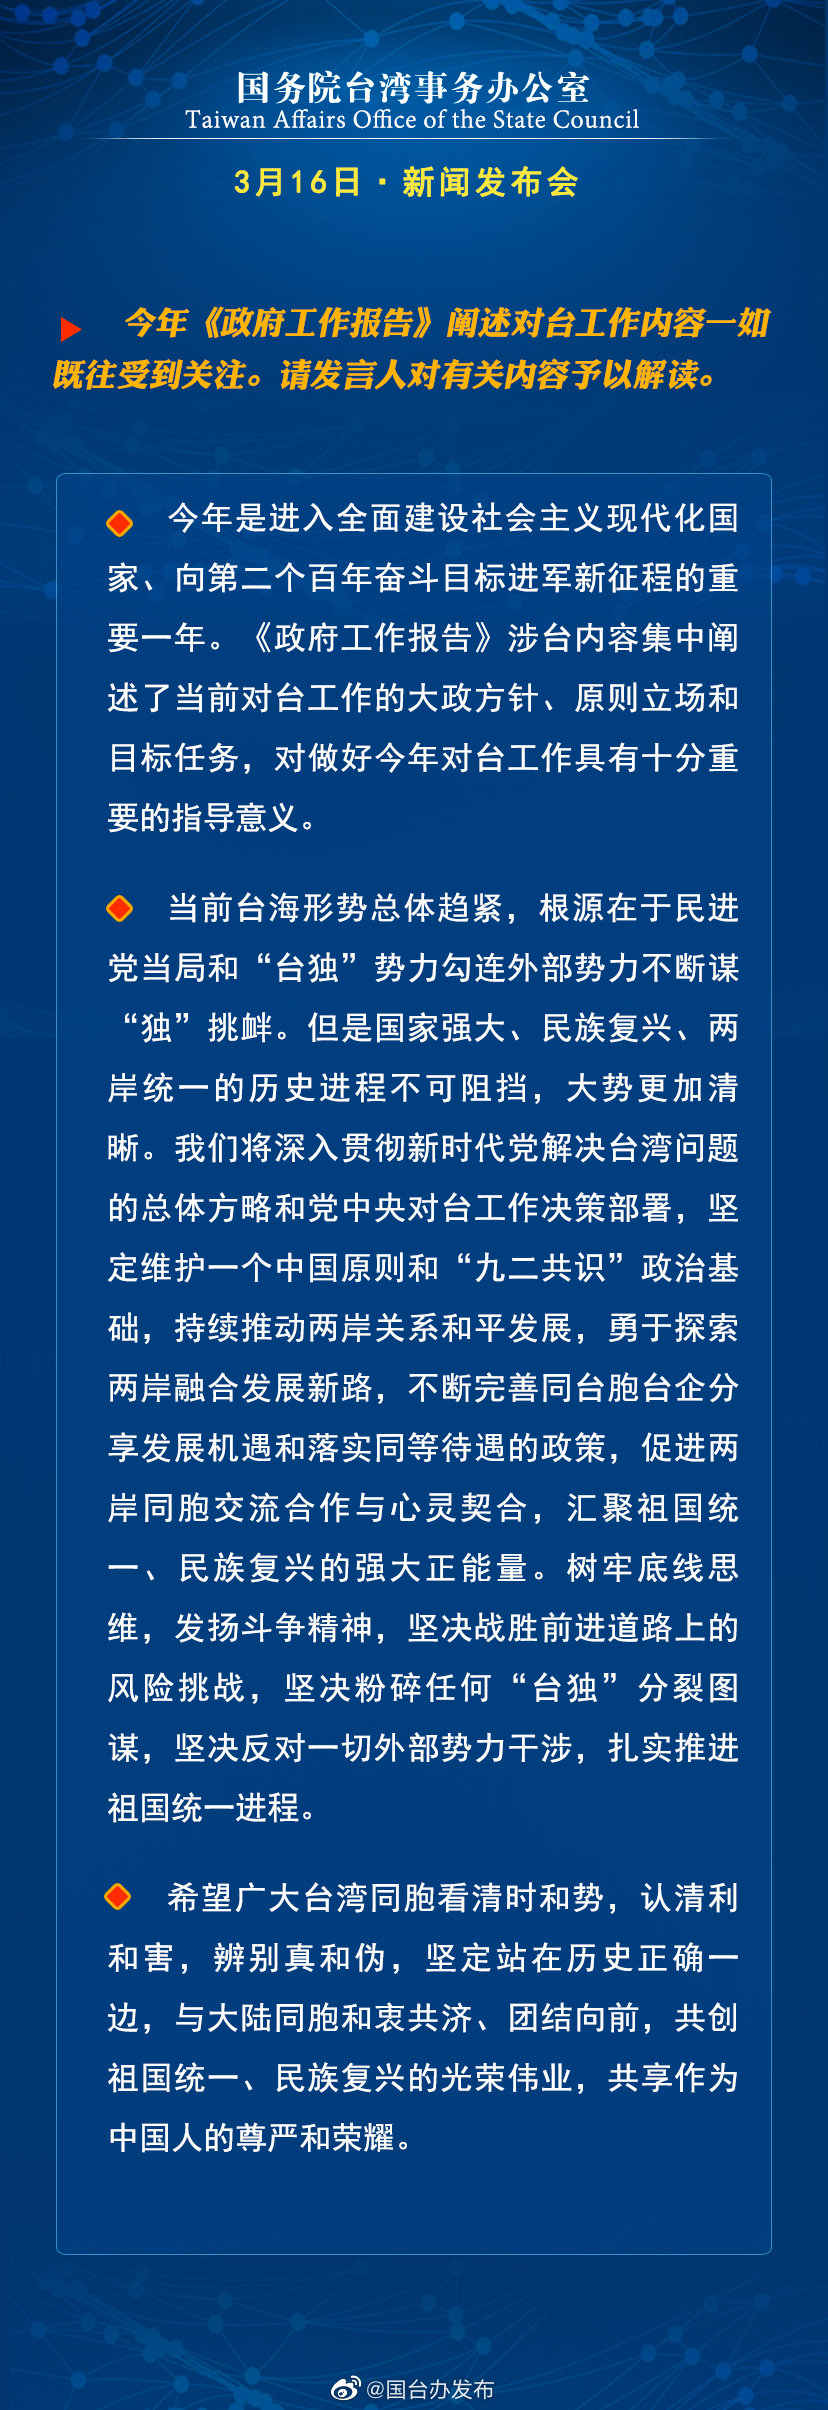 国务院台湾事务办公室3月16日·新闻发布会